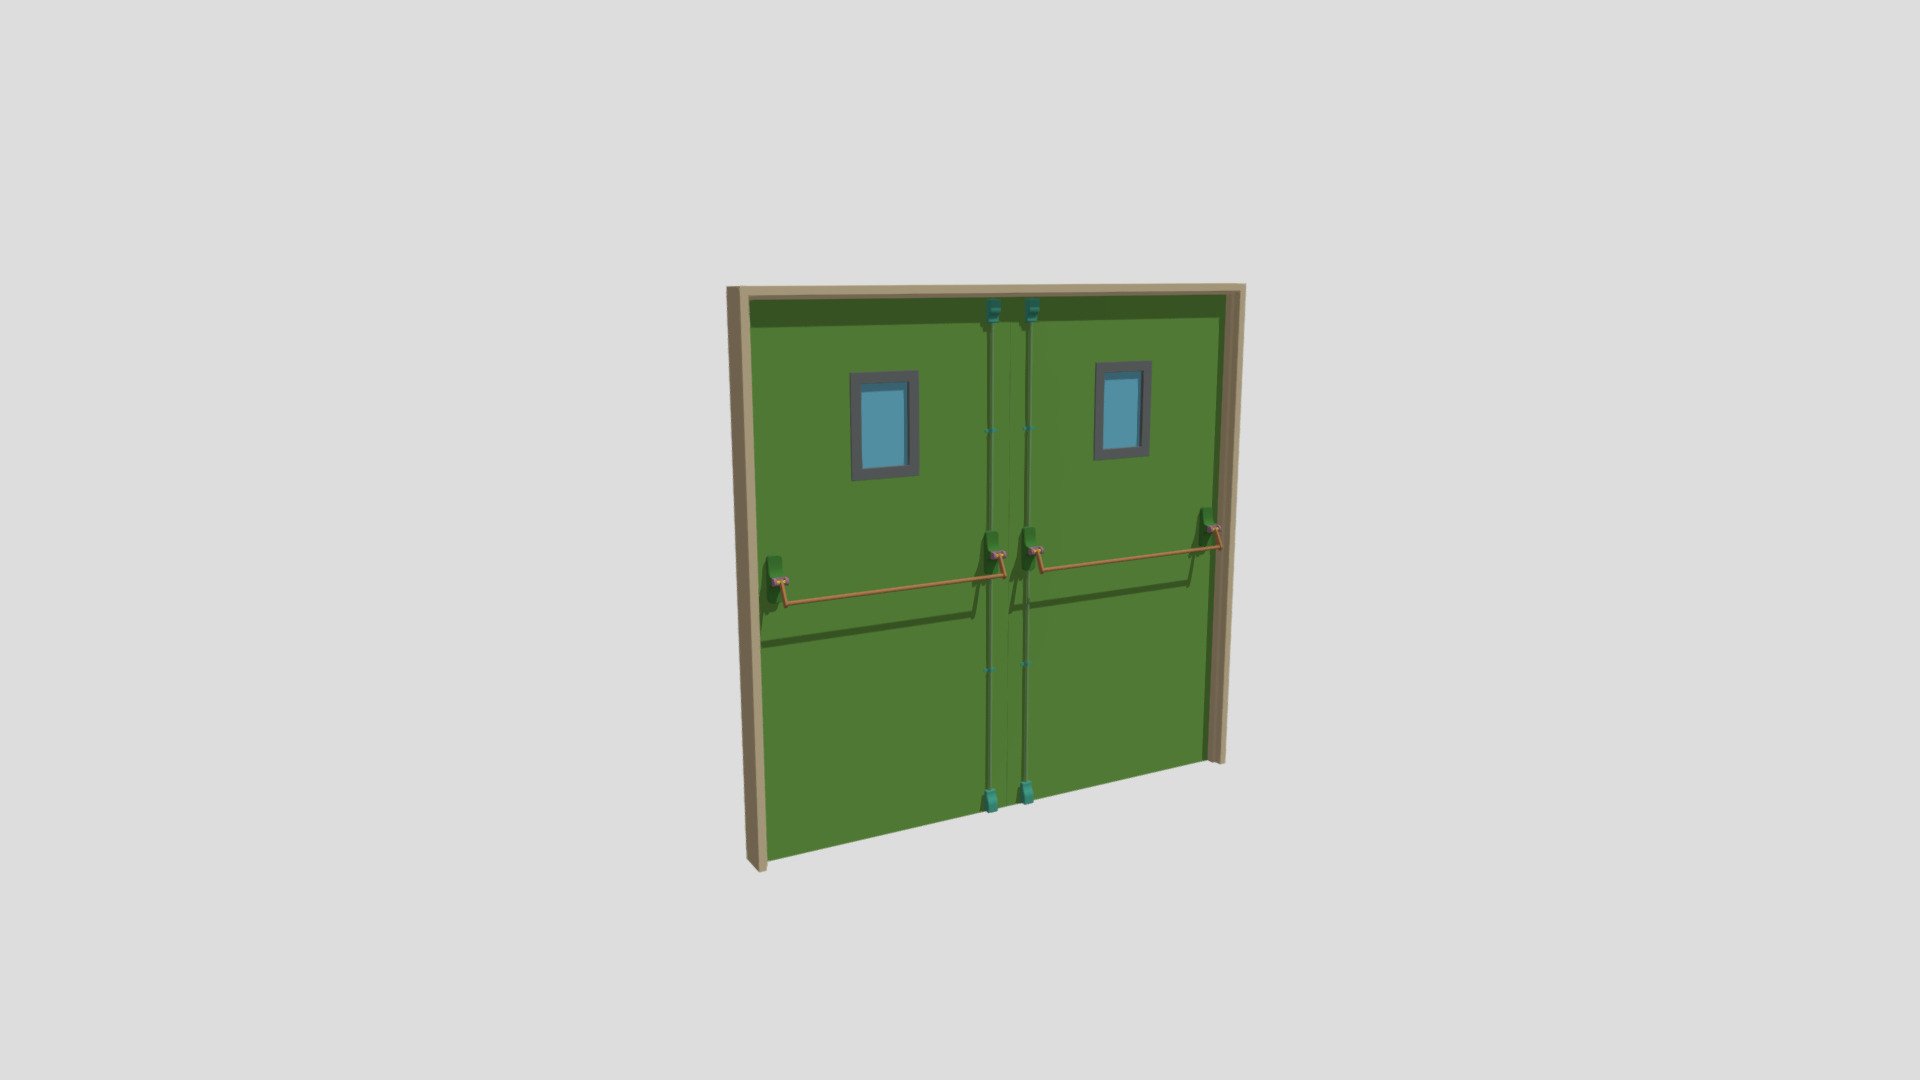 Exit Door Double - Exit Door Double - Download Free 3D model by moderncolin 3d model